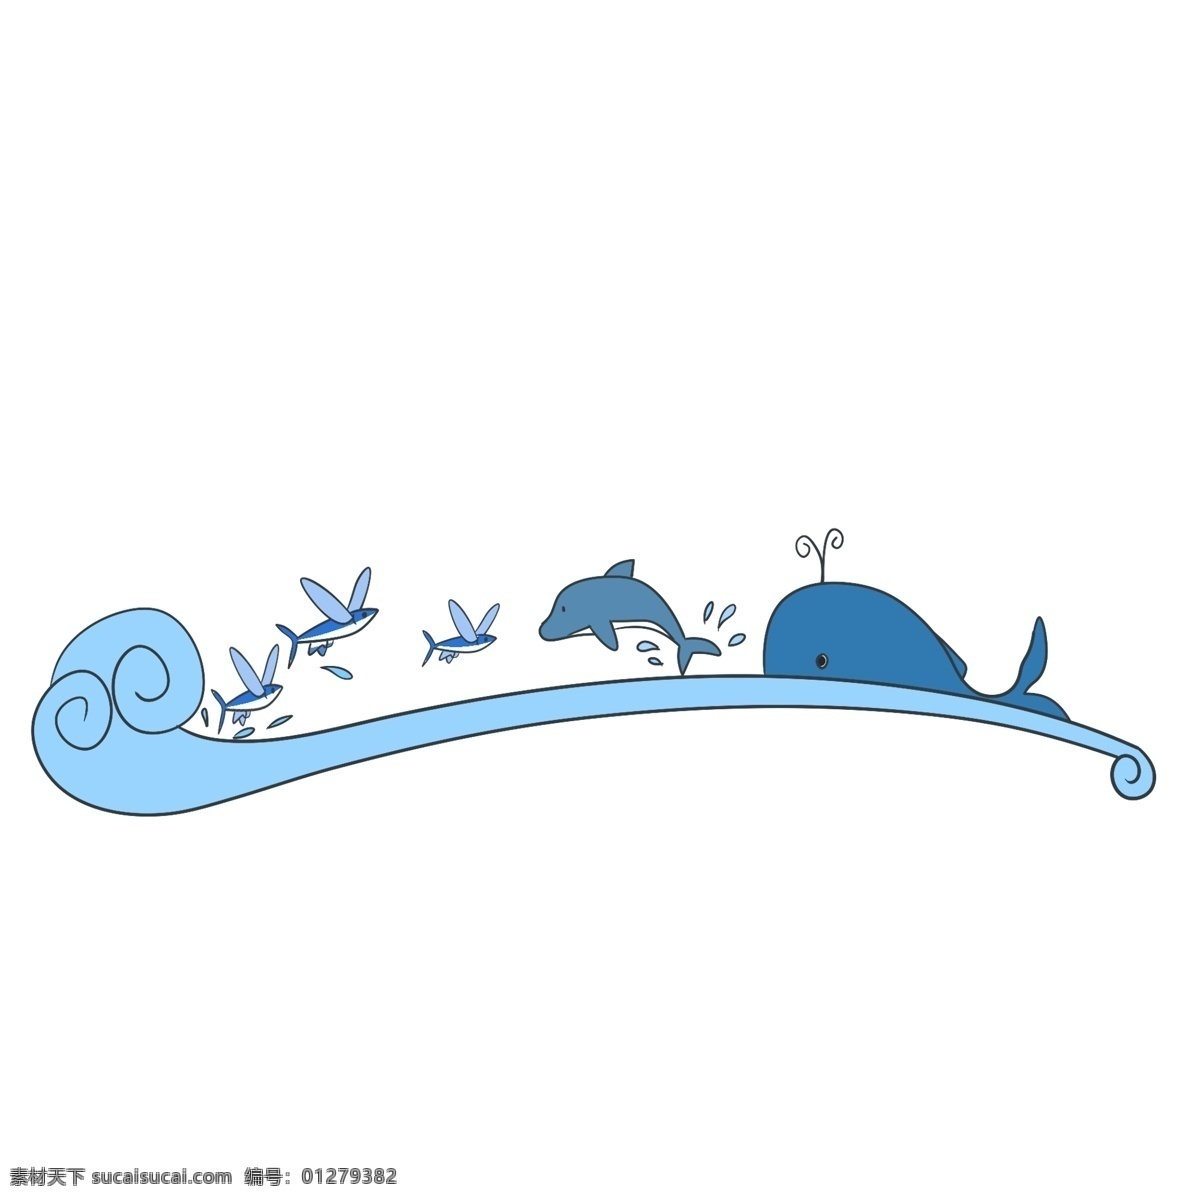 蓝色 海浪 装饰 插画 蓝色的海浪 蓝色的鲸鱼 海浪装饰 海浪插画 立体海浪 卡通海浪 精美海浪